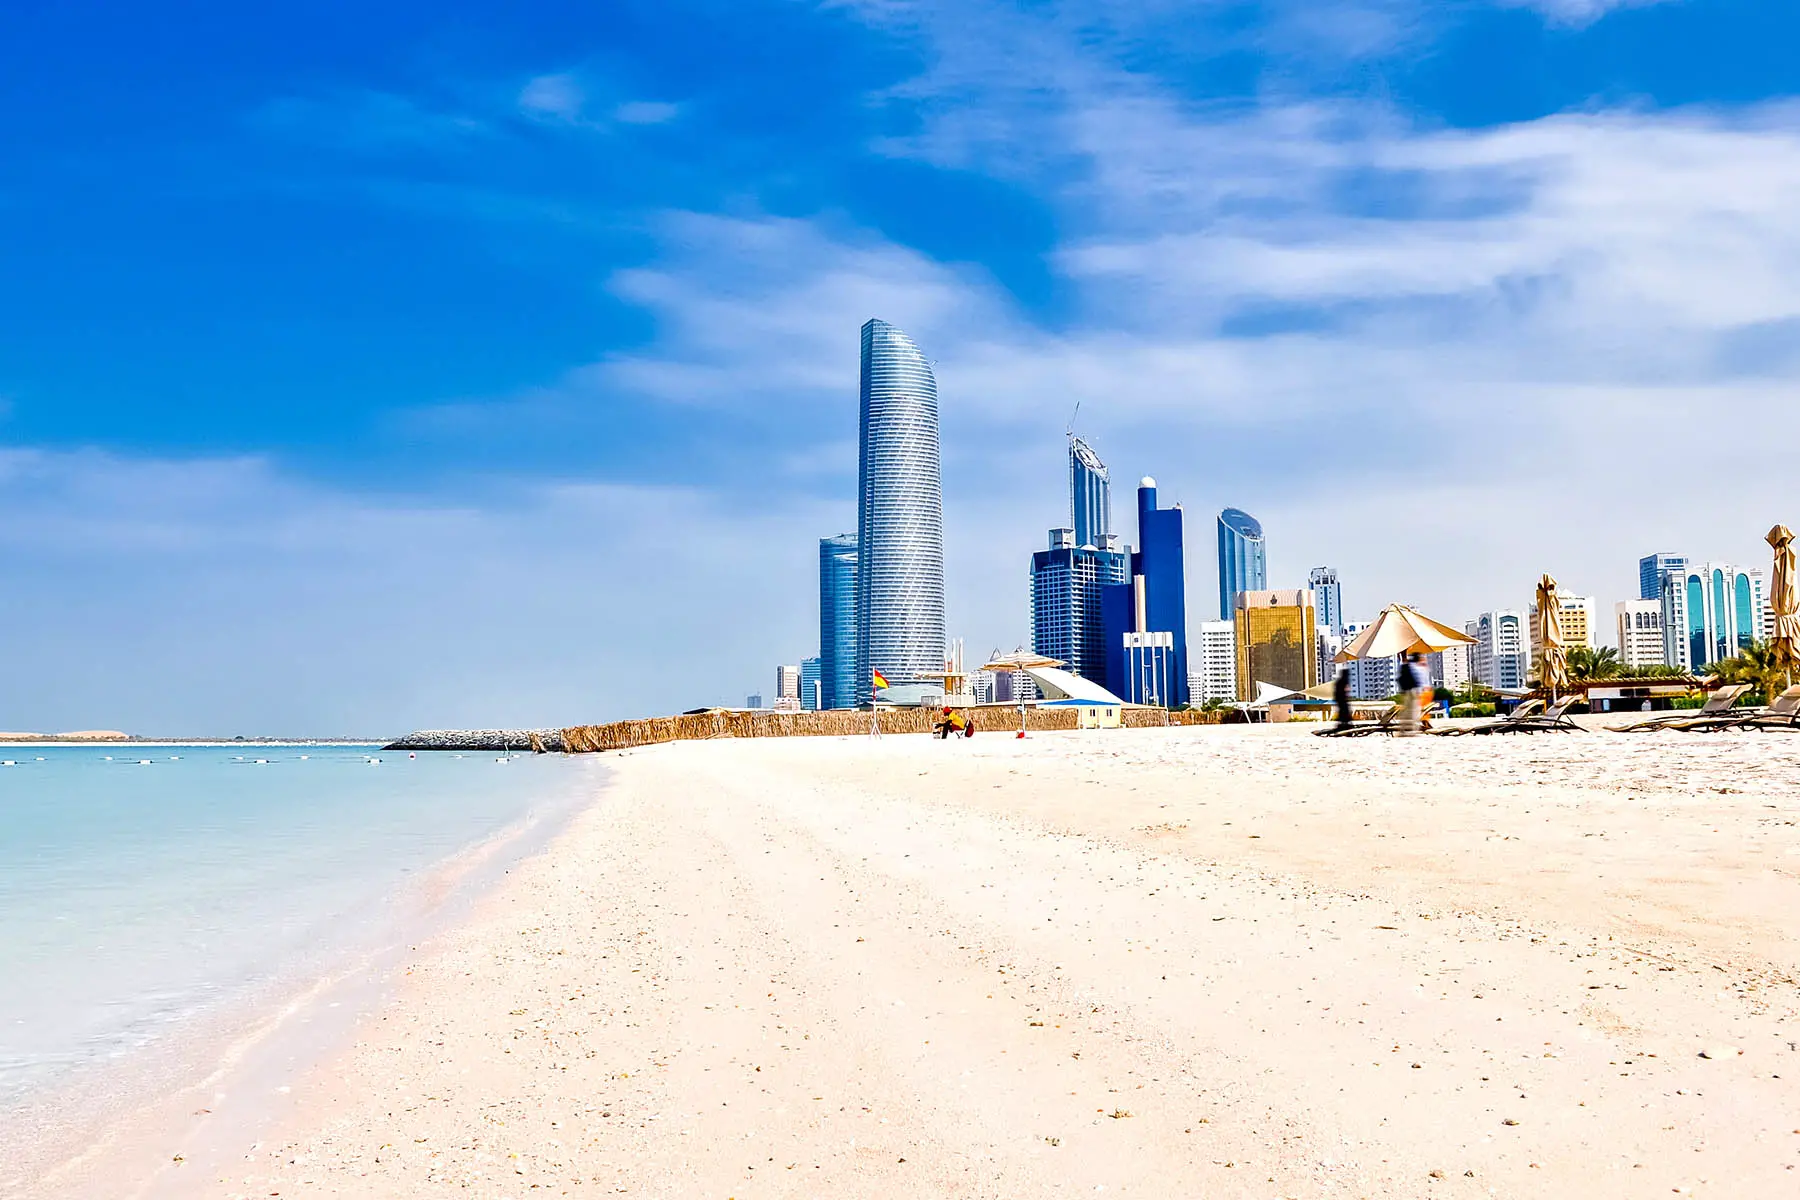 Corniche Beach in Abu Dhabi